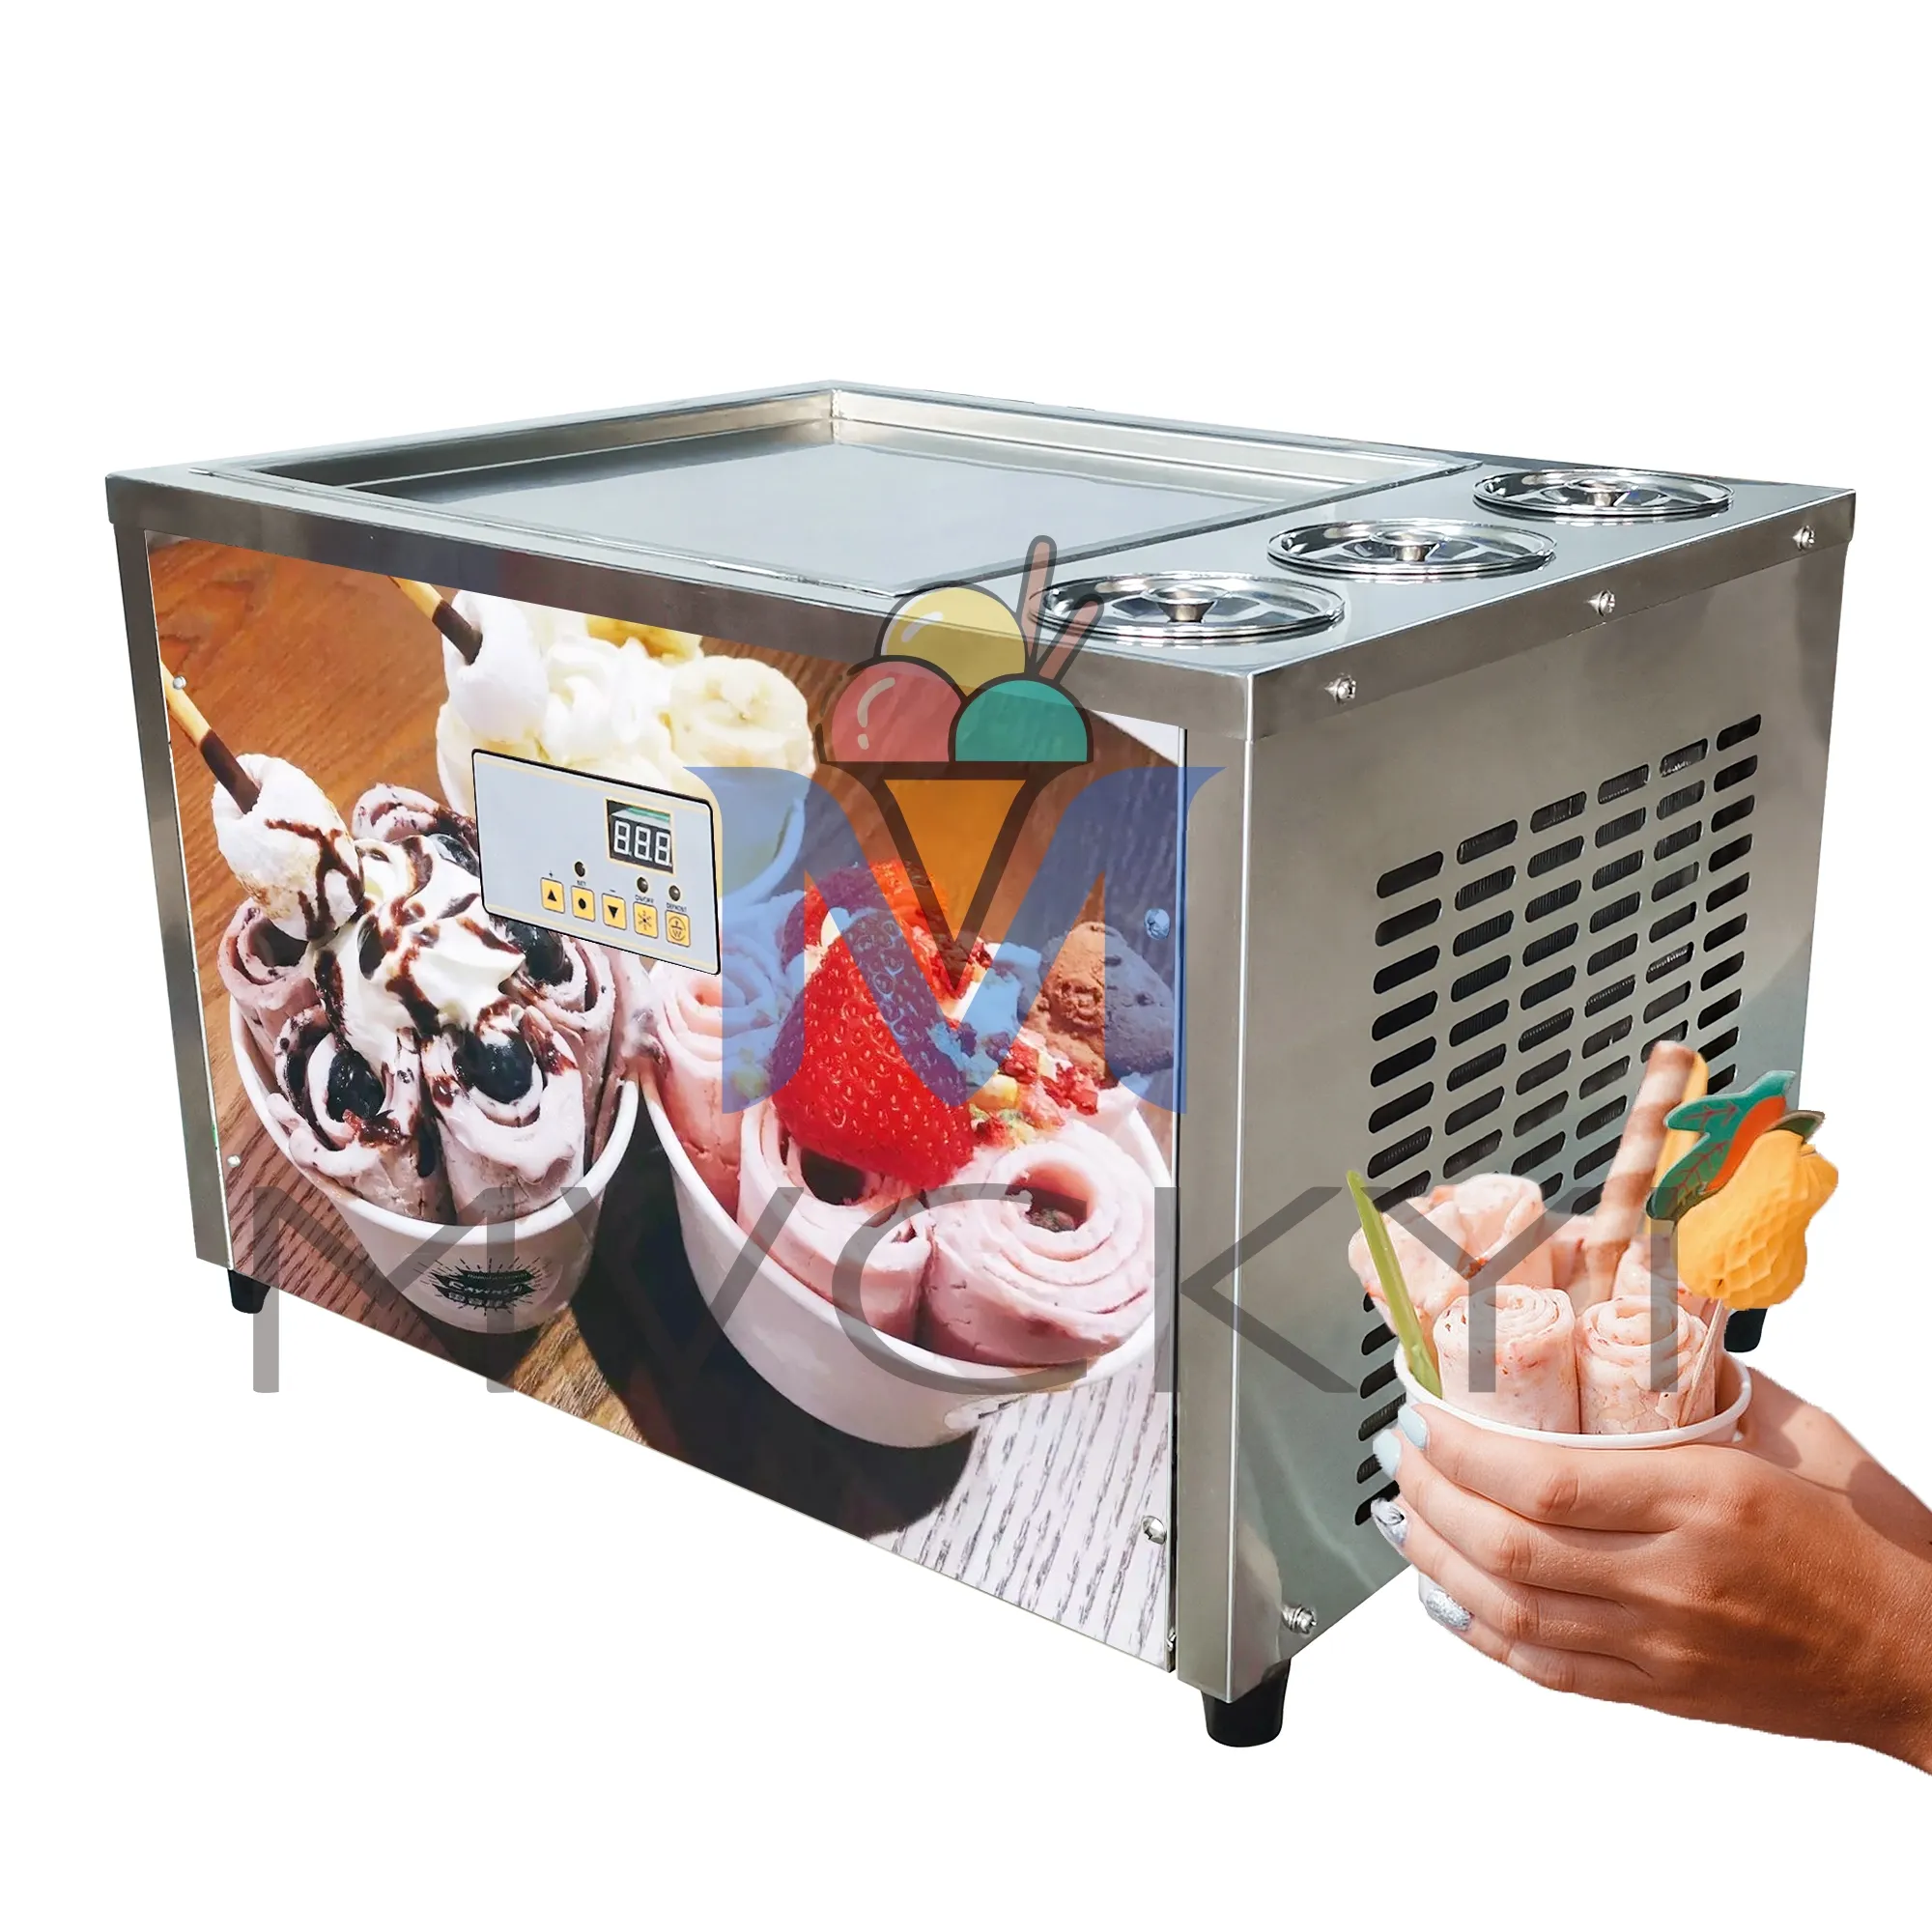 Mvckyi 18インチスクエアフライドアイスクリームロールマシン/3 PCSバケット付き電気炒めアイスクリームメーカー/フローズンヨーグルトアイスパン